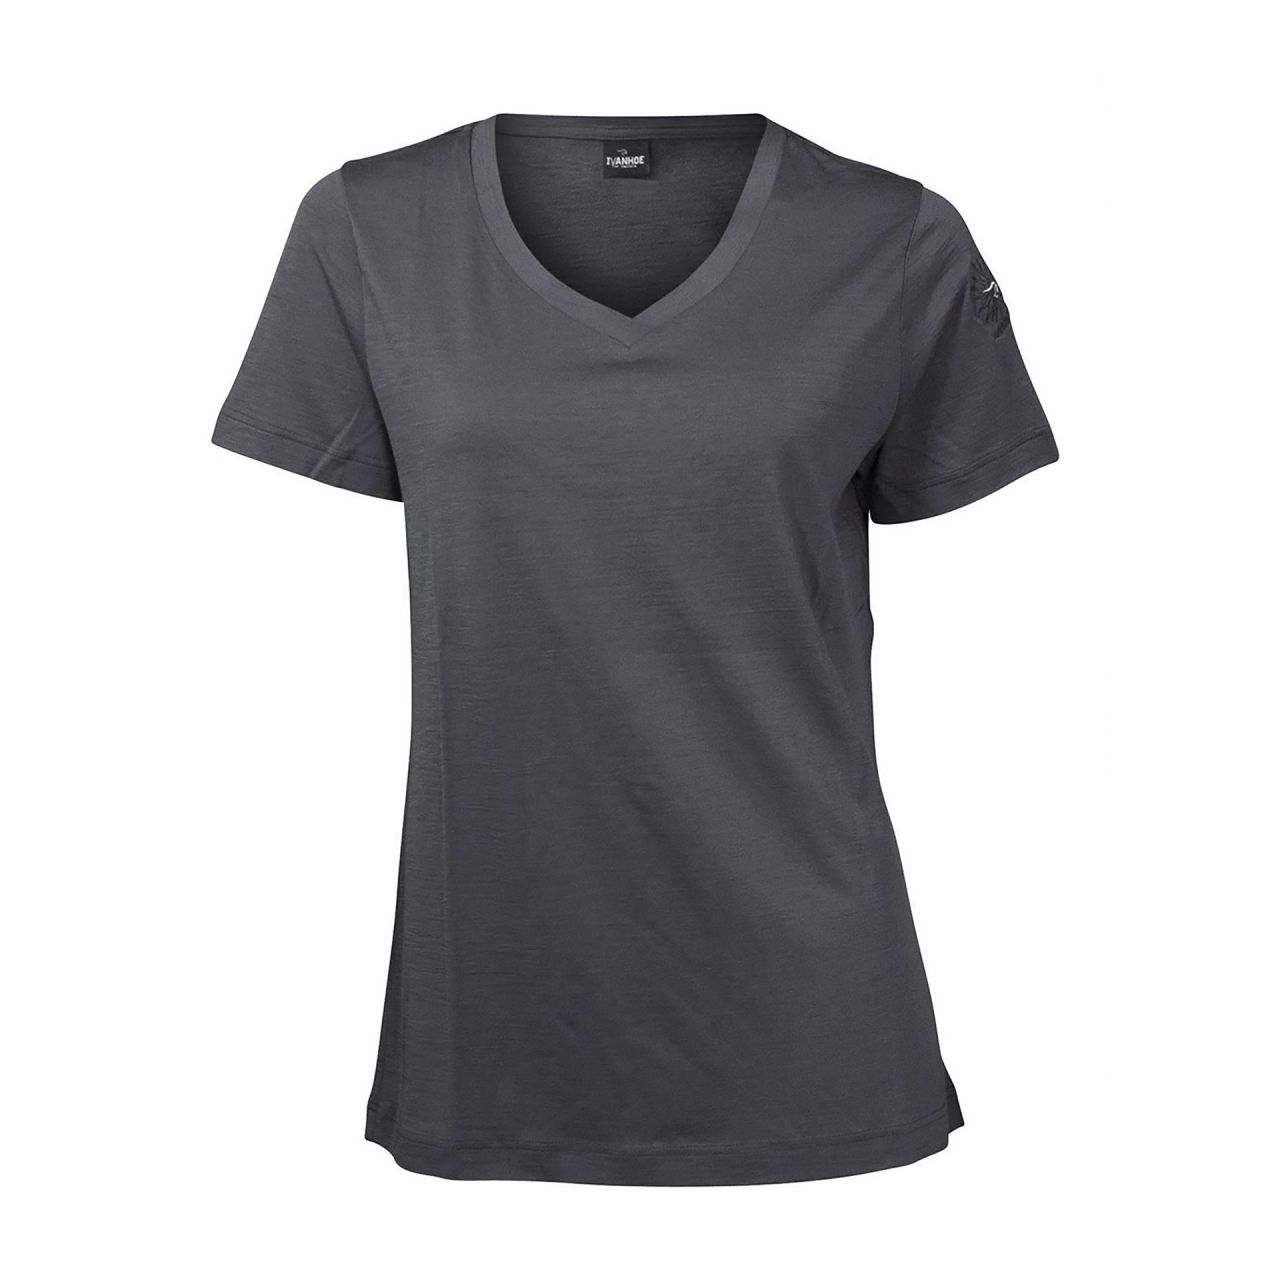 Damen-T-Shirt von IVANHOE, Modell "Mim" graphite marl